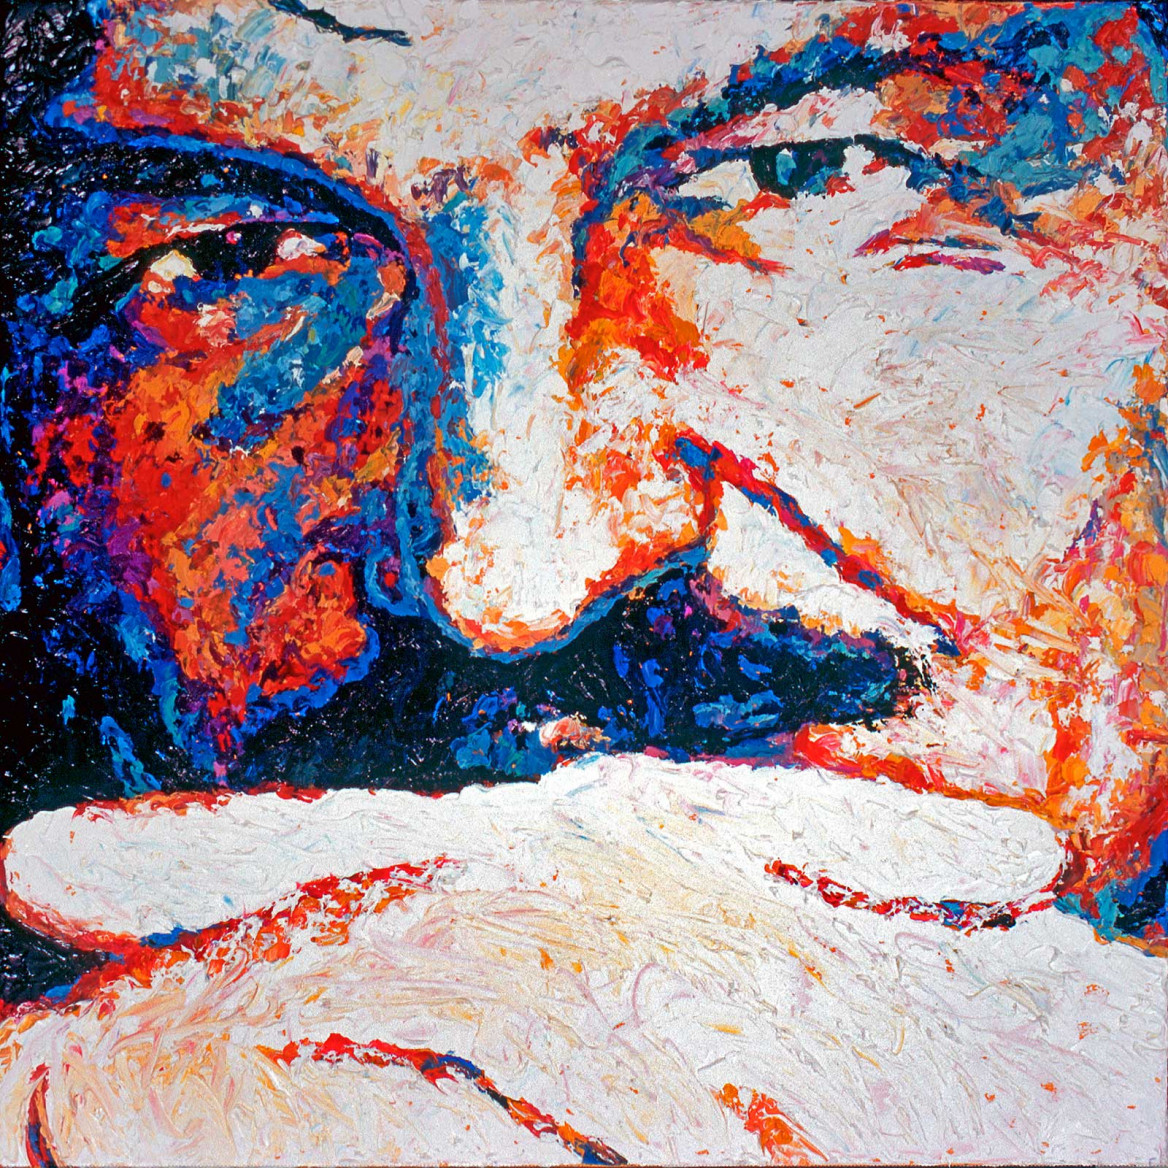 Portrait of Dirk in red and blue painted with palette knife in oil on canvas; Porträt von Dirk in Blau- und Rottönen gemalt in oel mit Spachtelmesser auf Leinwand